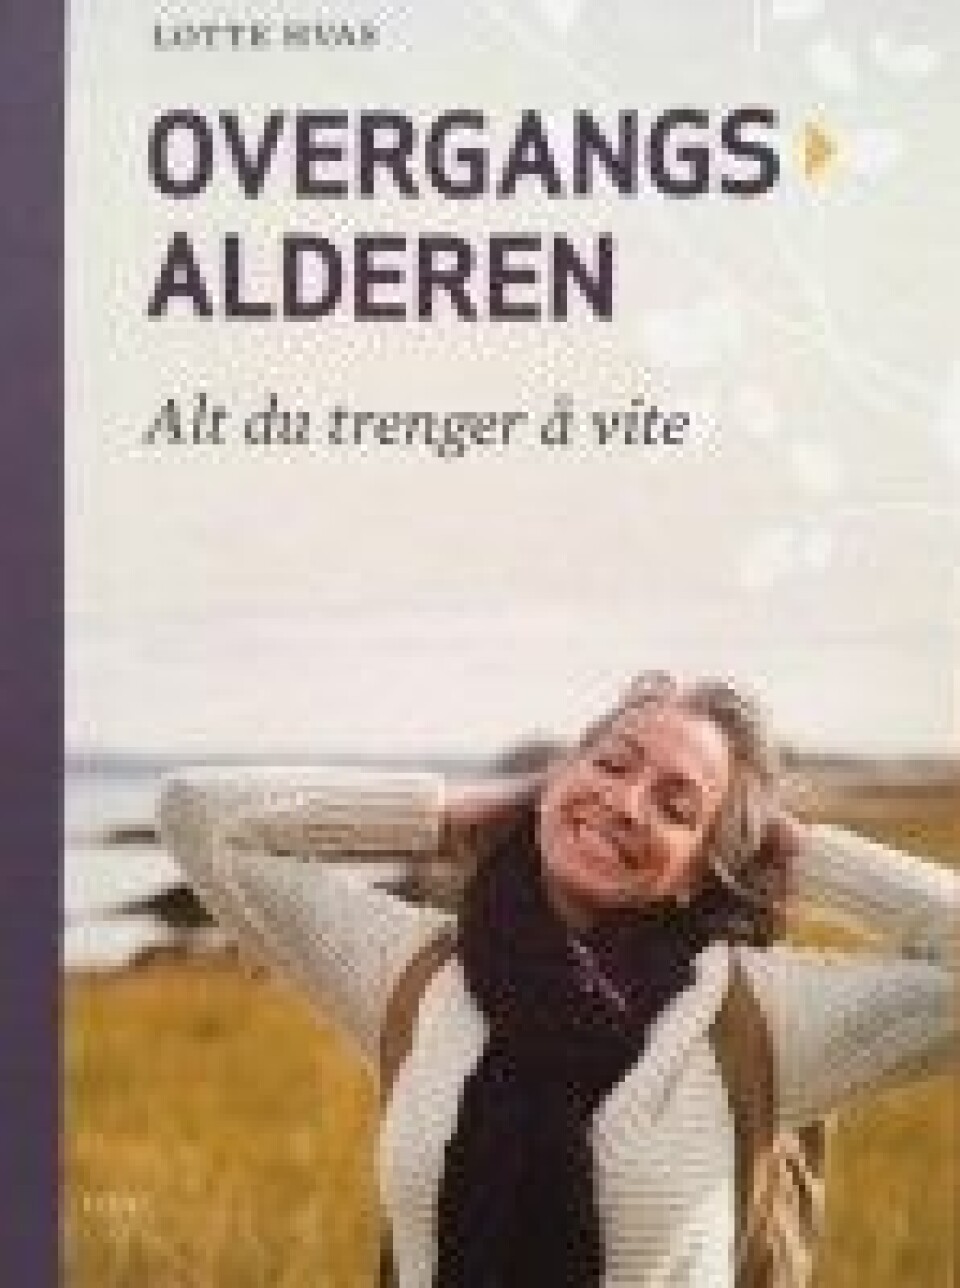 Skandinaviske kvinner opplever overgangsalderen annerledes enn amerikanske. I boken Overgangsalderen tar forfattere opp myter og misforståelser om denne fasen. (Foto: Anne Lise Stranden/forskning.no)